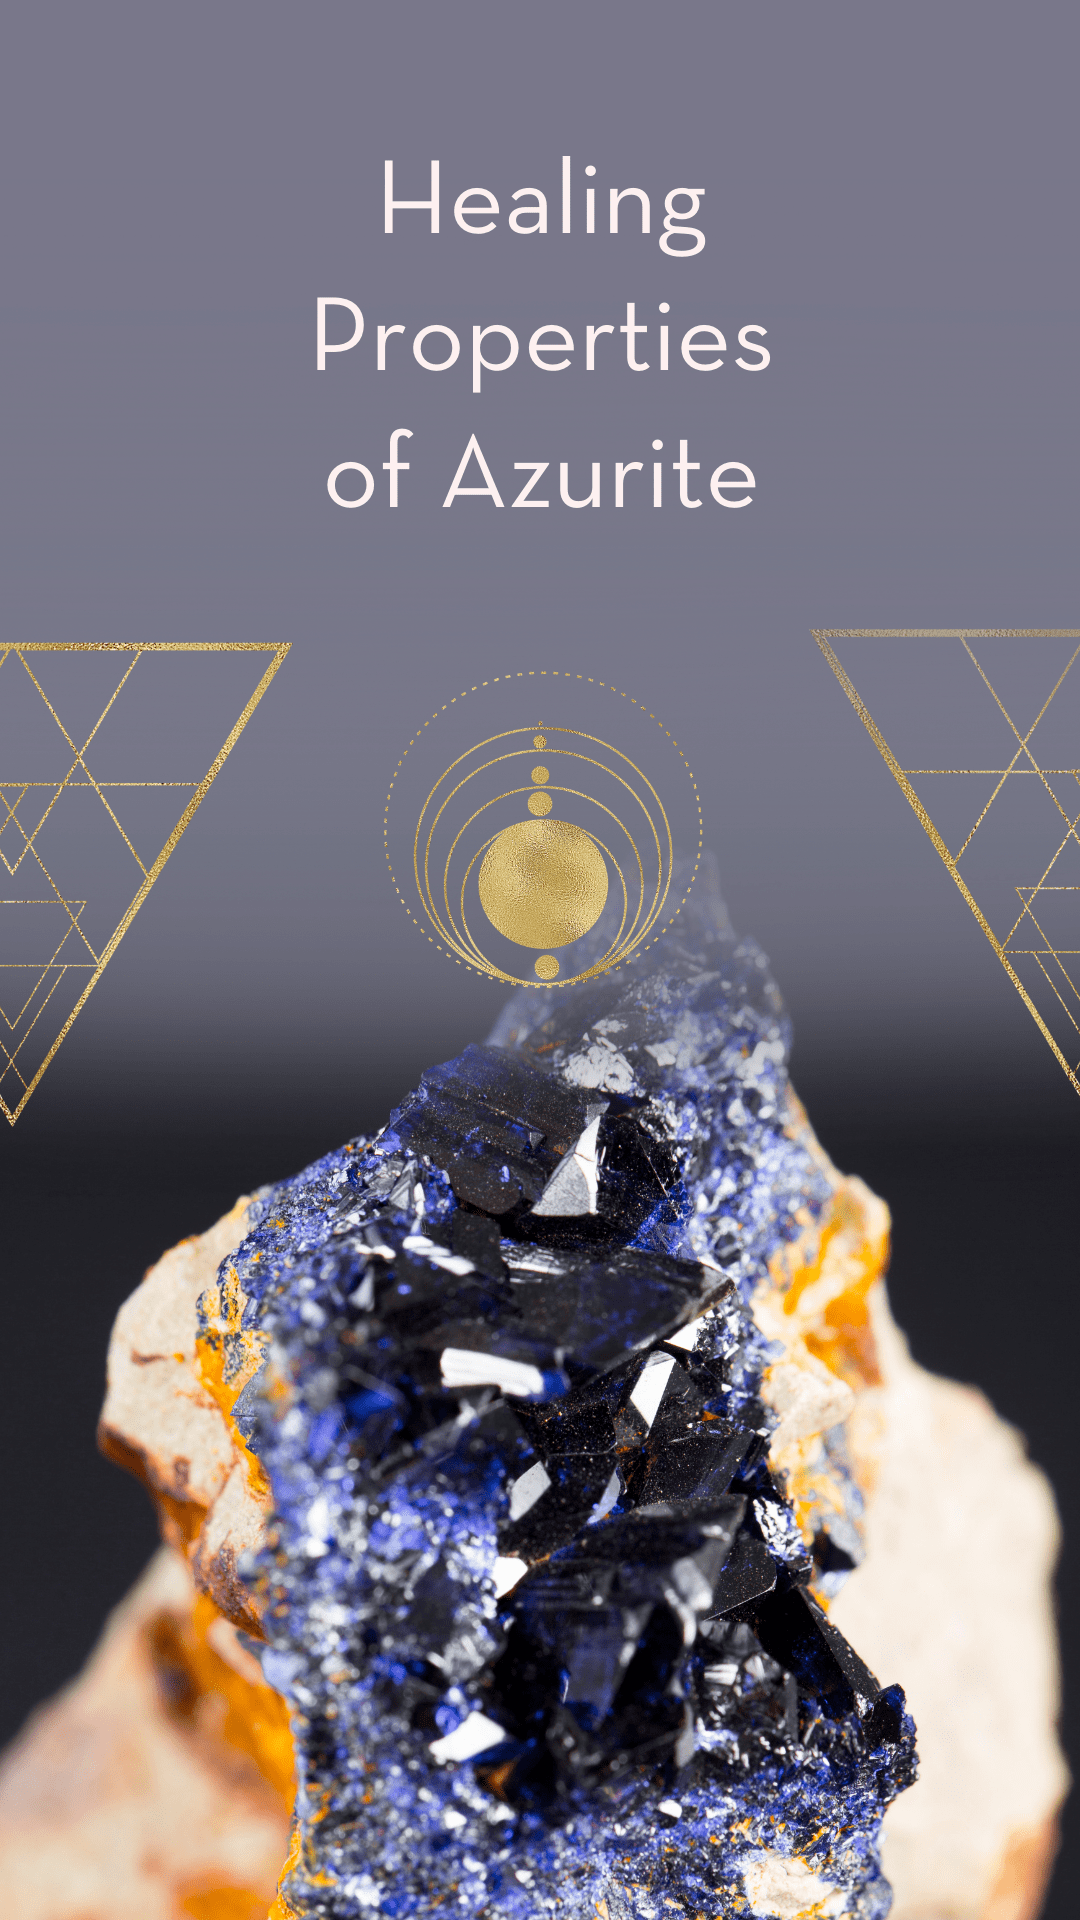 Healing properties of Azurite